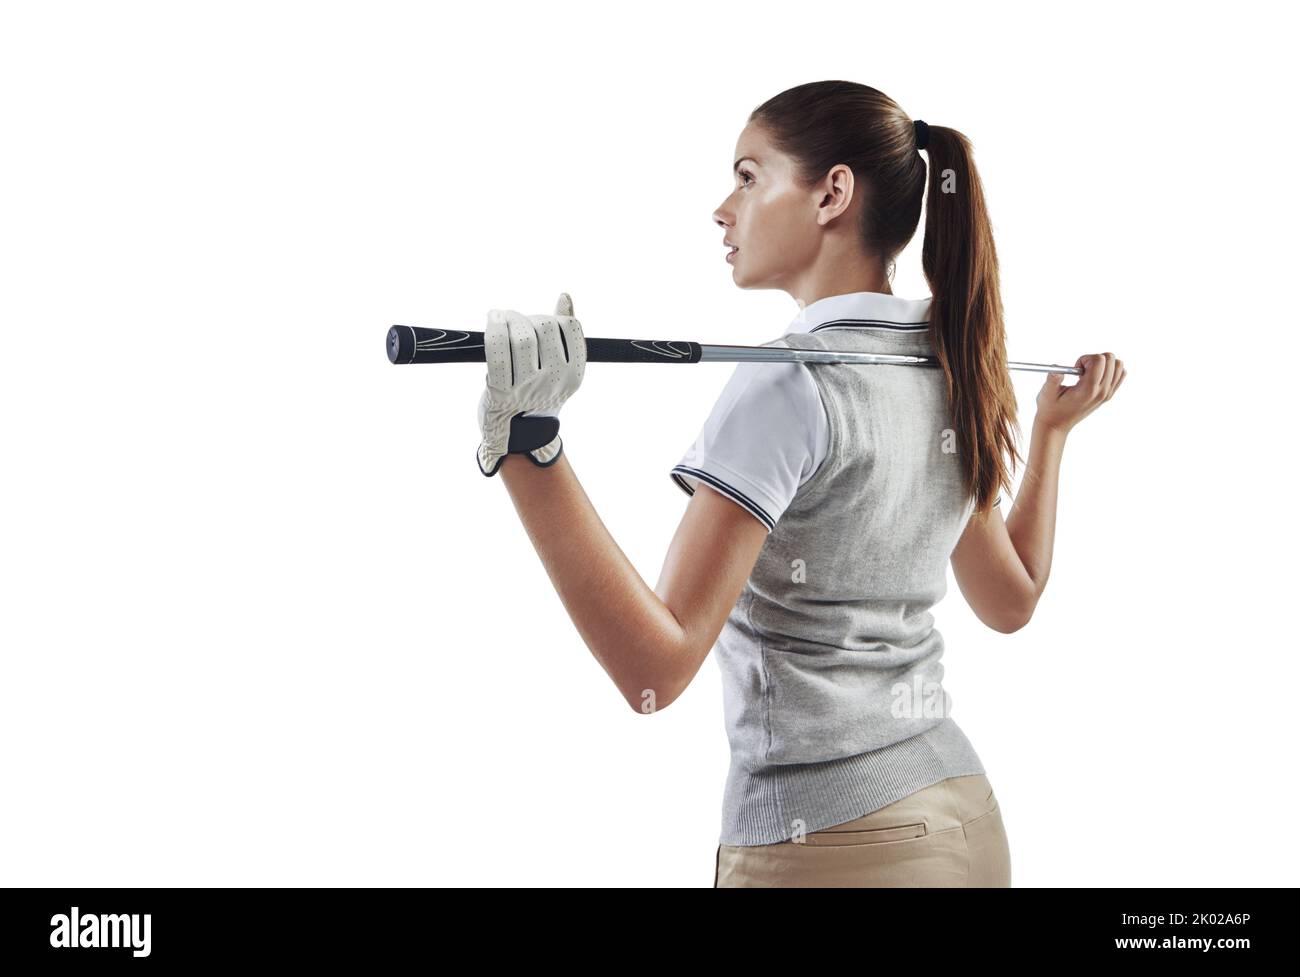 Königin des Clubs. Studioaufnahme einer jungen Golferin, die einen Golfschläger hinter ihrem Rücken in Weiß gehalten hat. Stockfoto